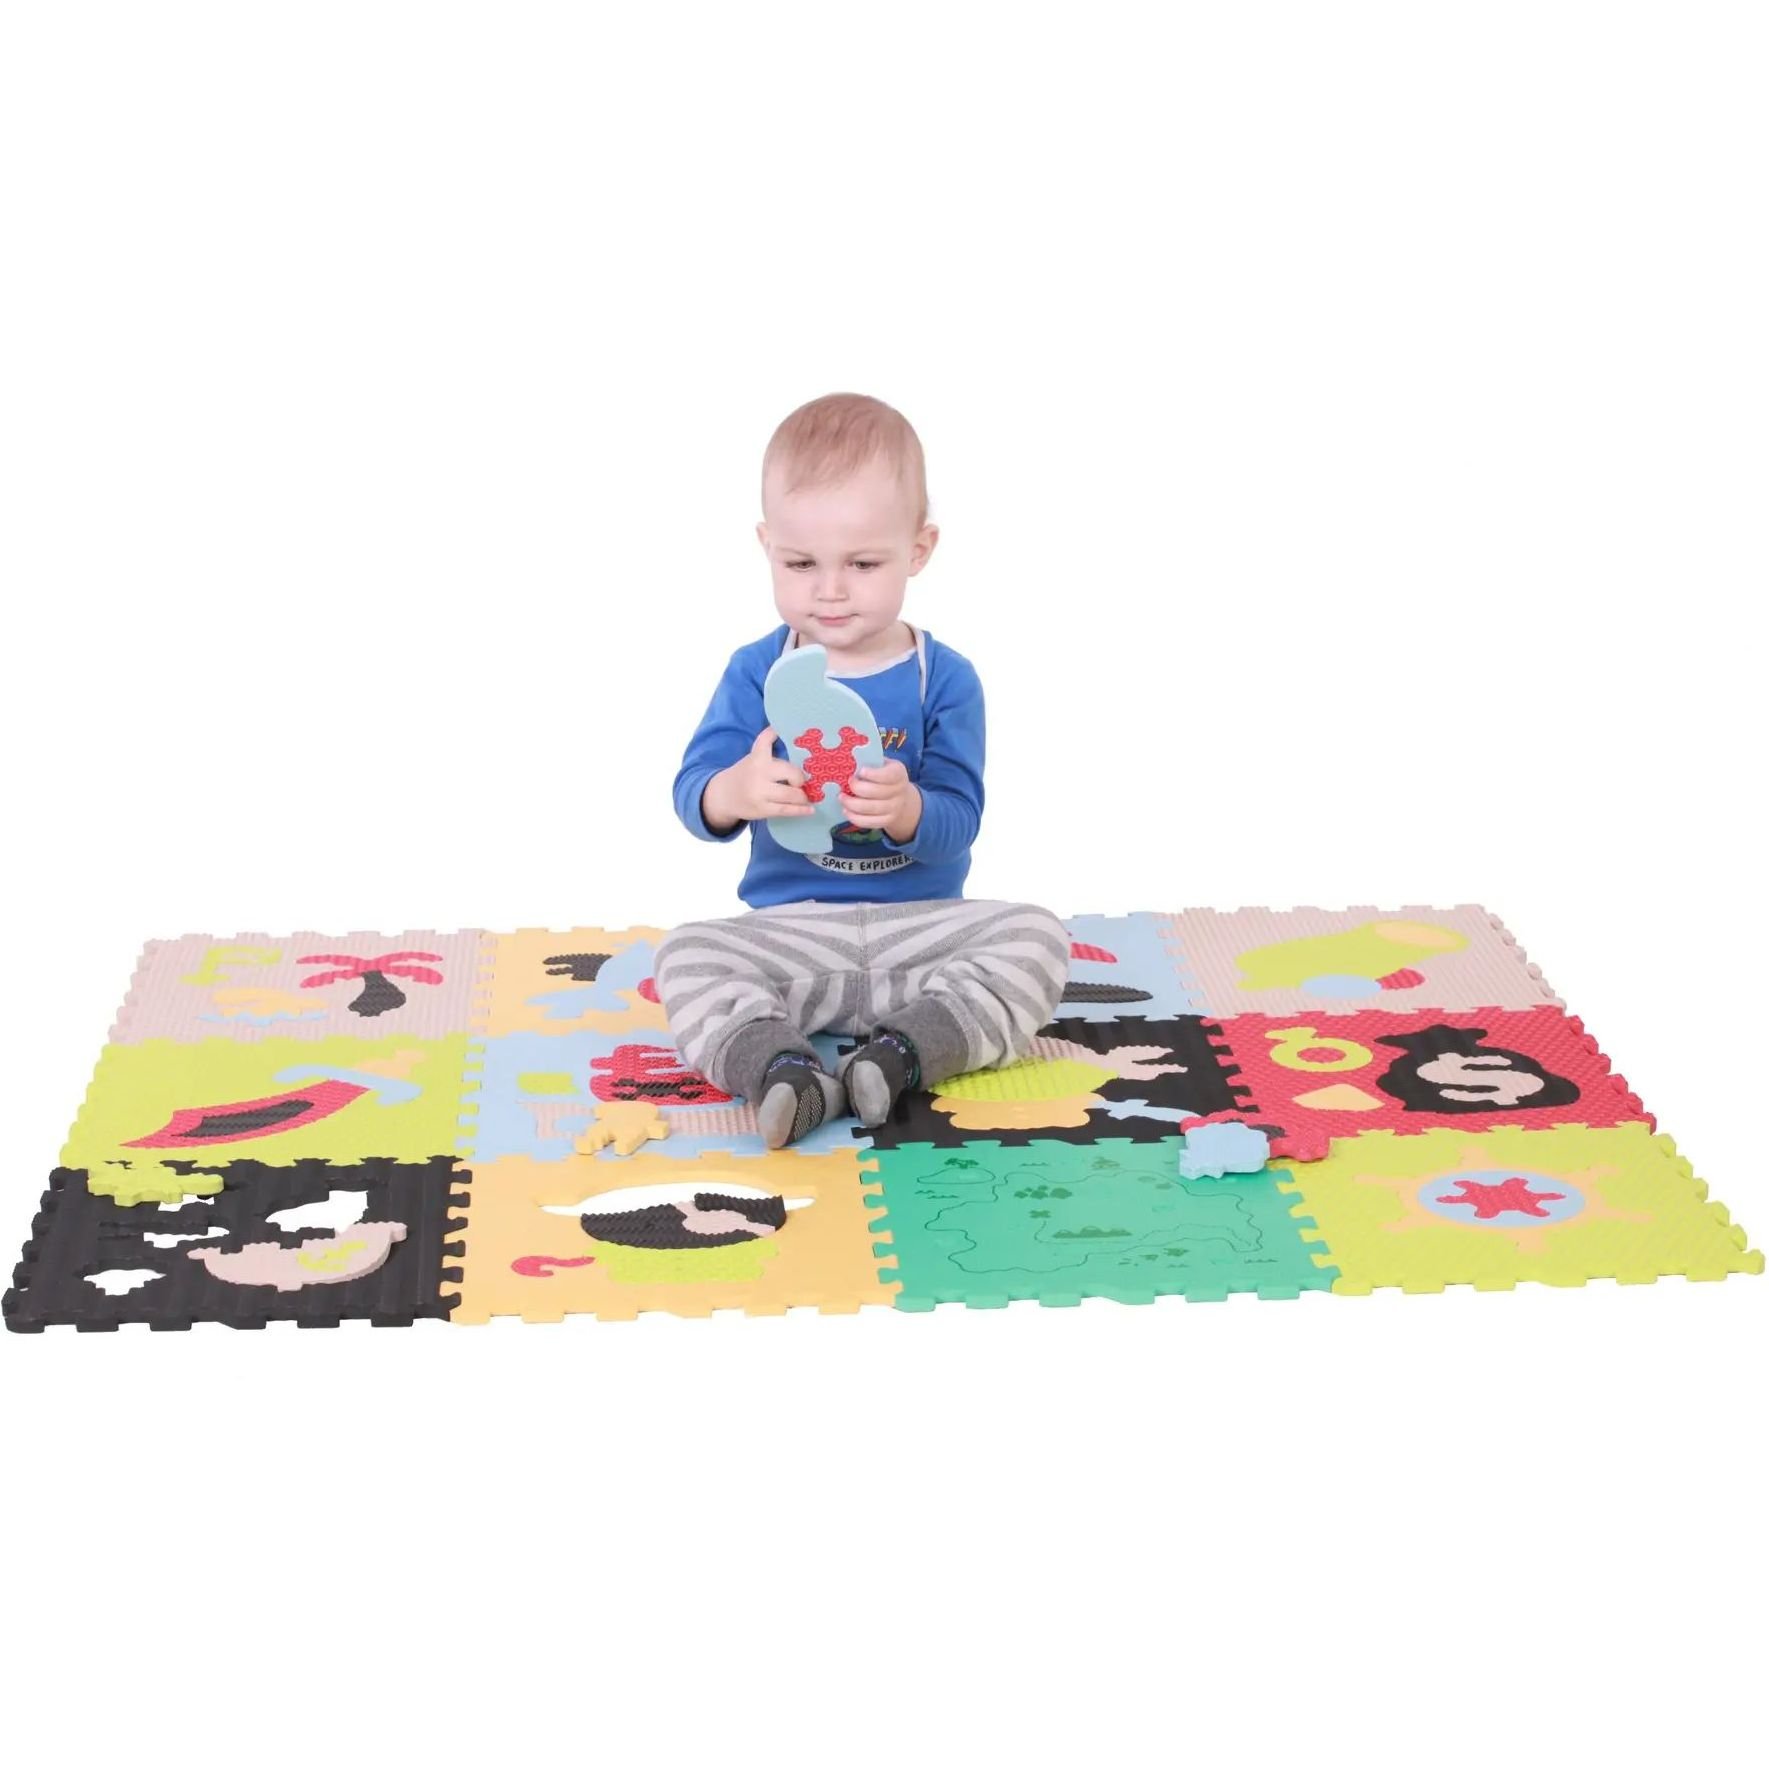 Дитячий розвиваючий ігровий килимок-пазл Baby Great Пригода піратів, 122х92 см (GB-M1501) - фото 3